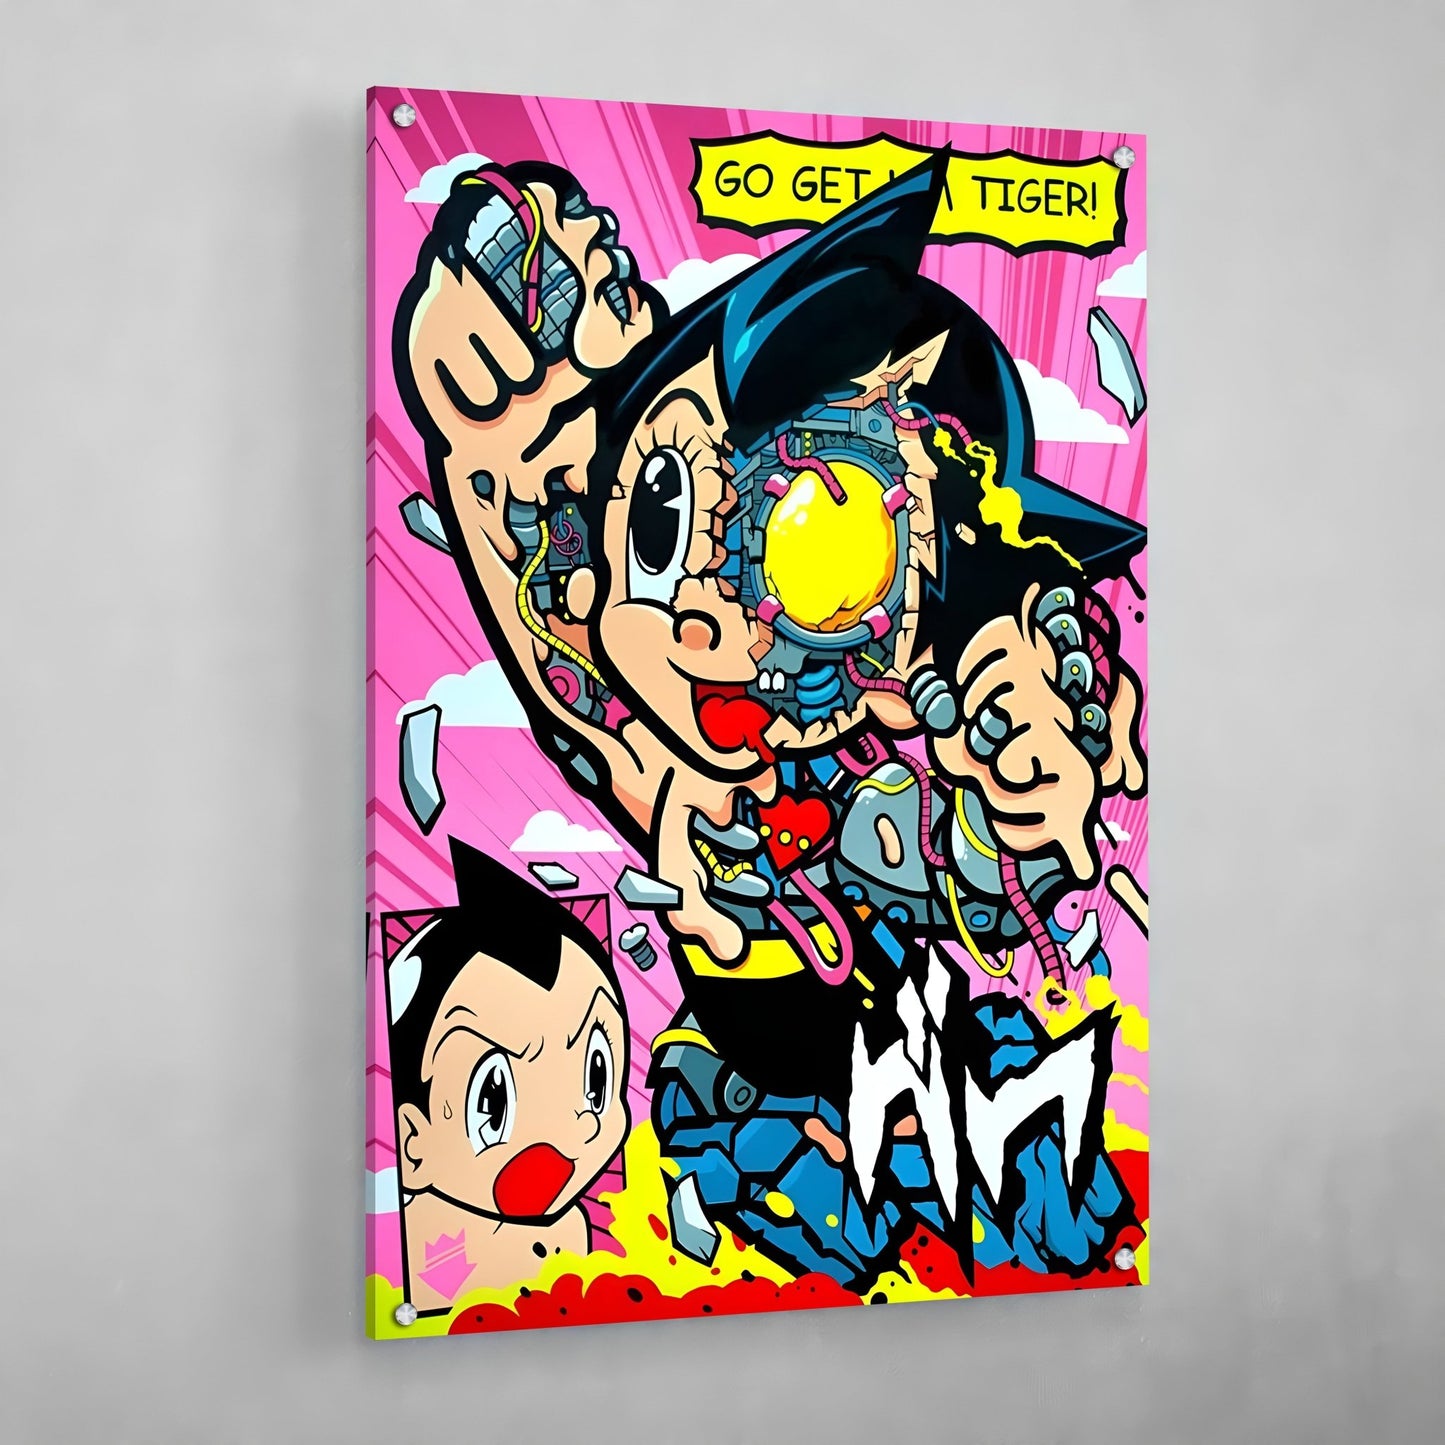 Cuadro Pop Art Astro Boy - La Casa Del Cuadro